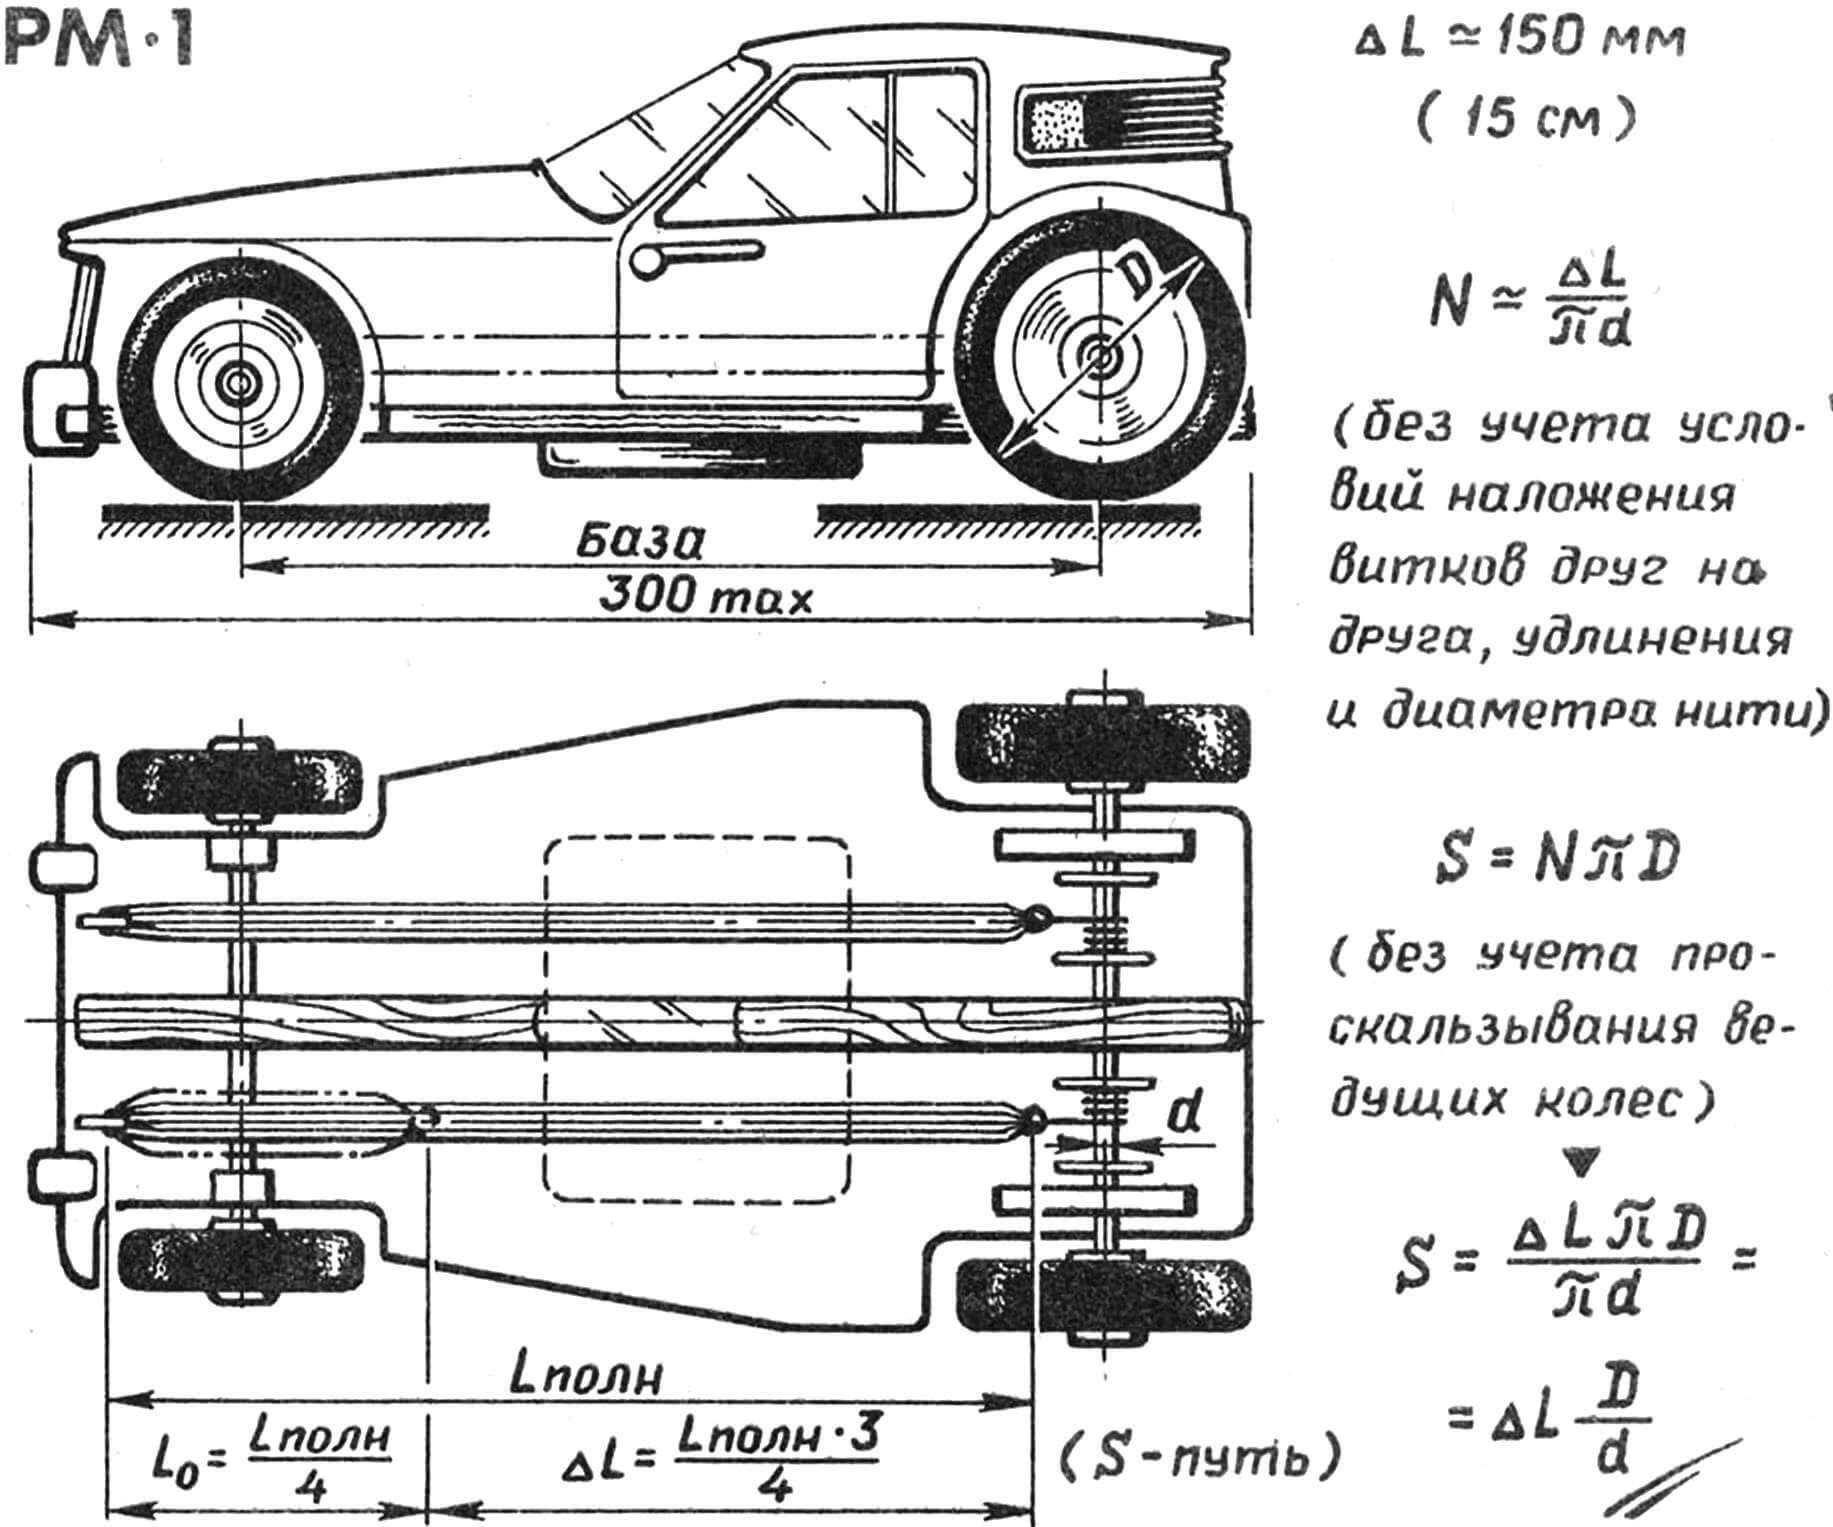 Рис. 2. Основные расчетные размеры модели класса РМ-1. Справа приведен расчет пути, проходимого на одной заводке двигателя.